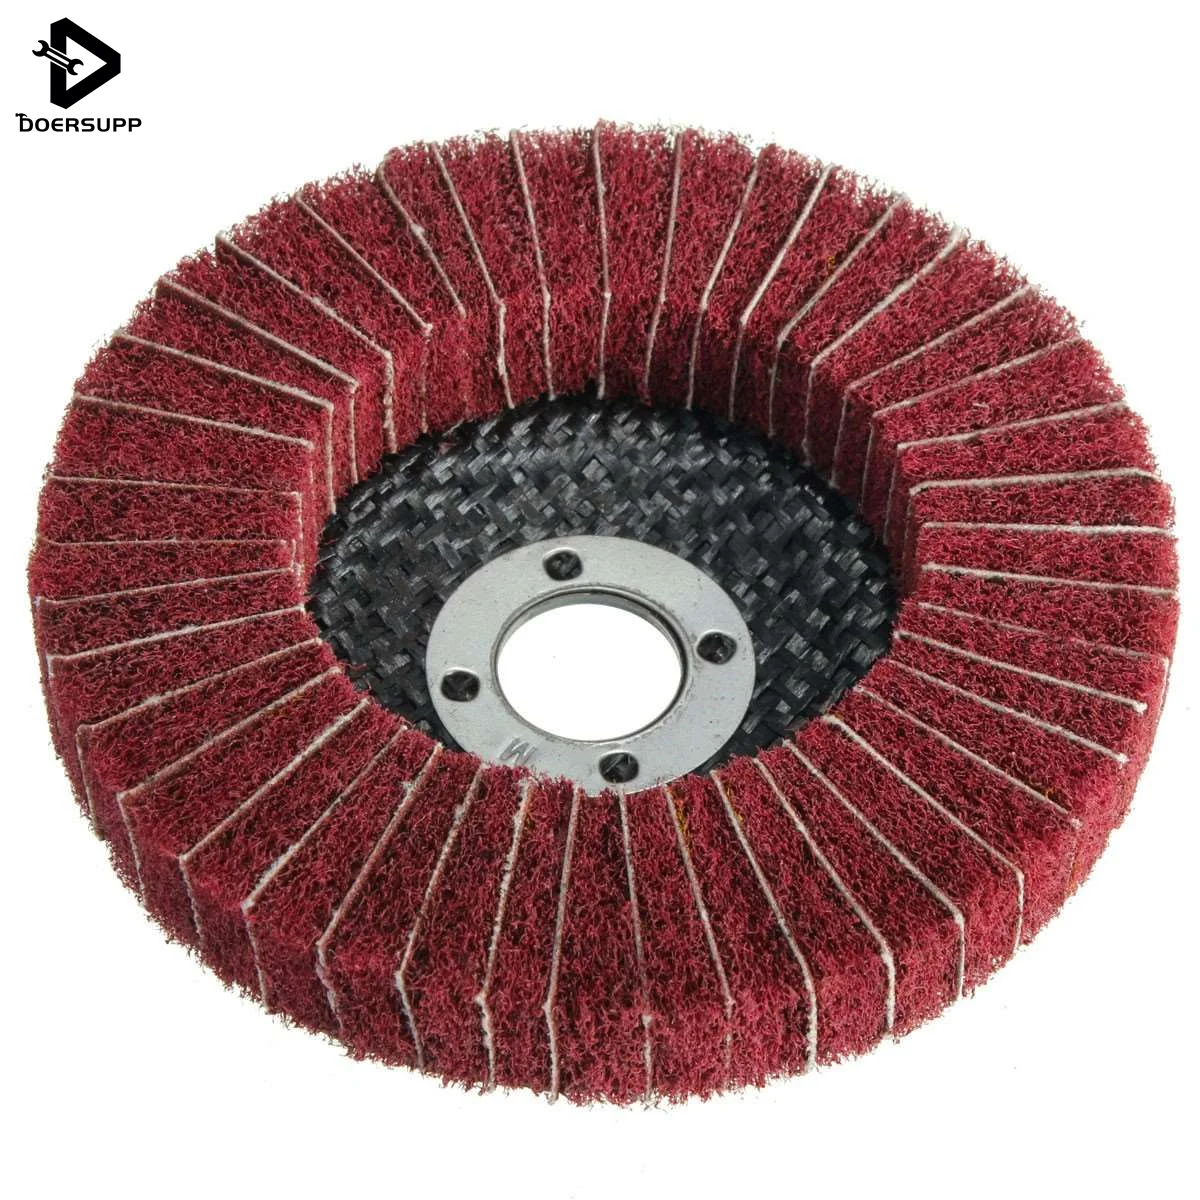 Высокое качество 1 шт. нейлон волокно абразивное колесо полировки Полировка диск диаметр 10 см Грит новое поступление